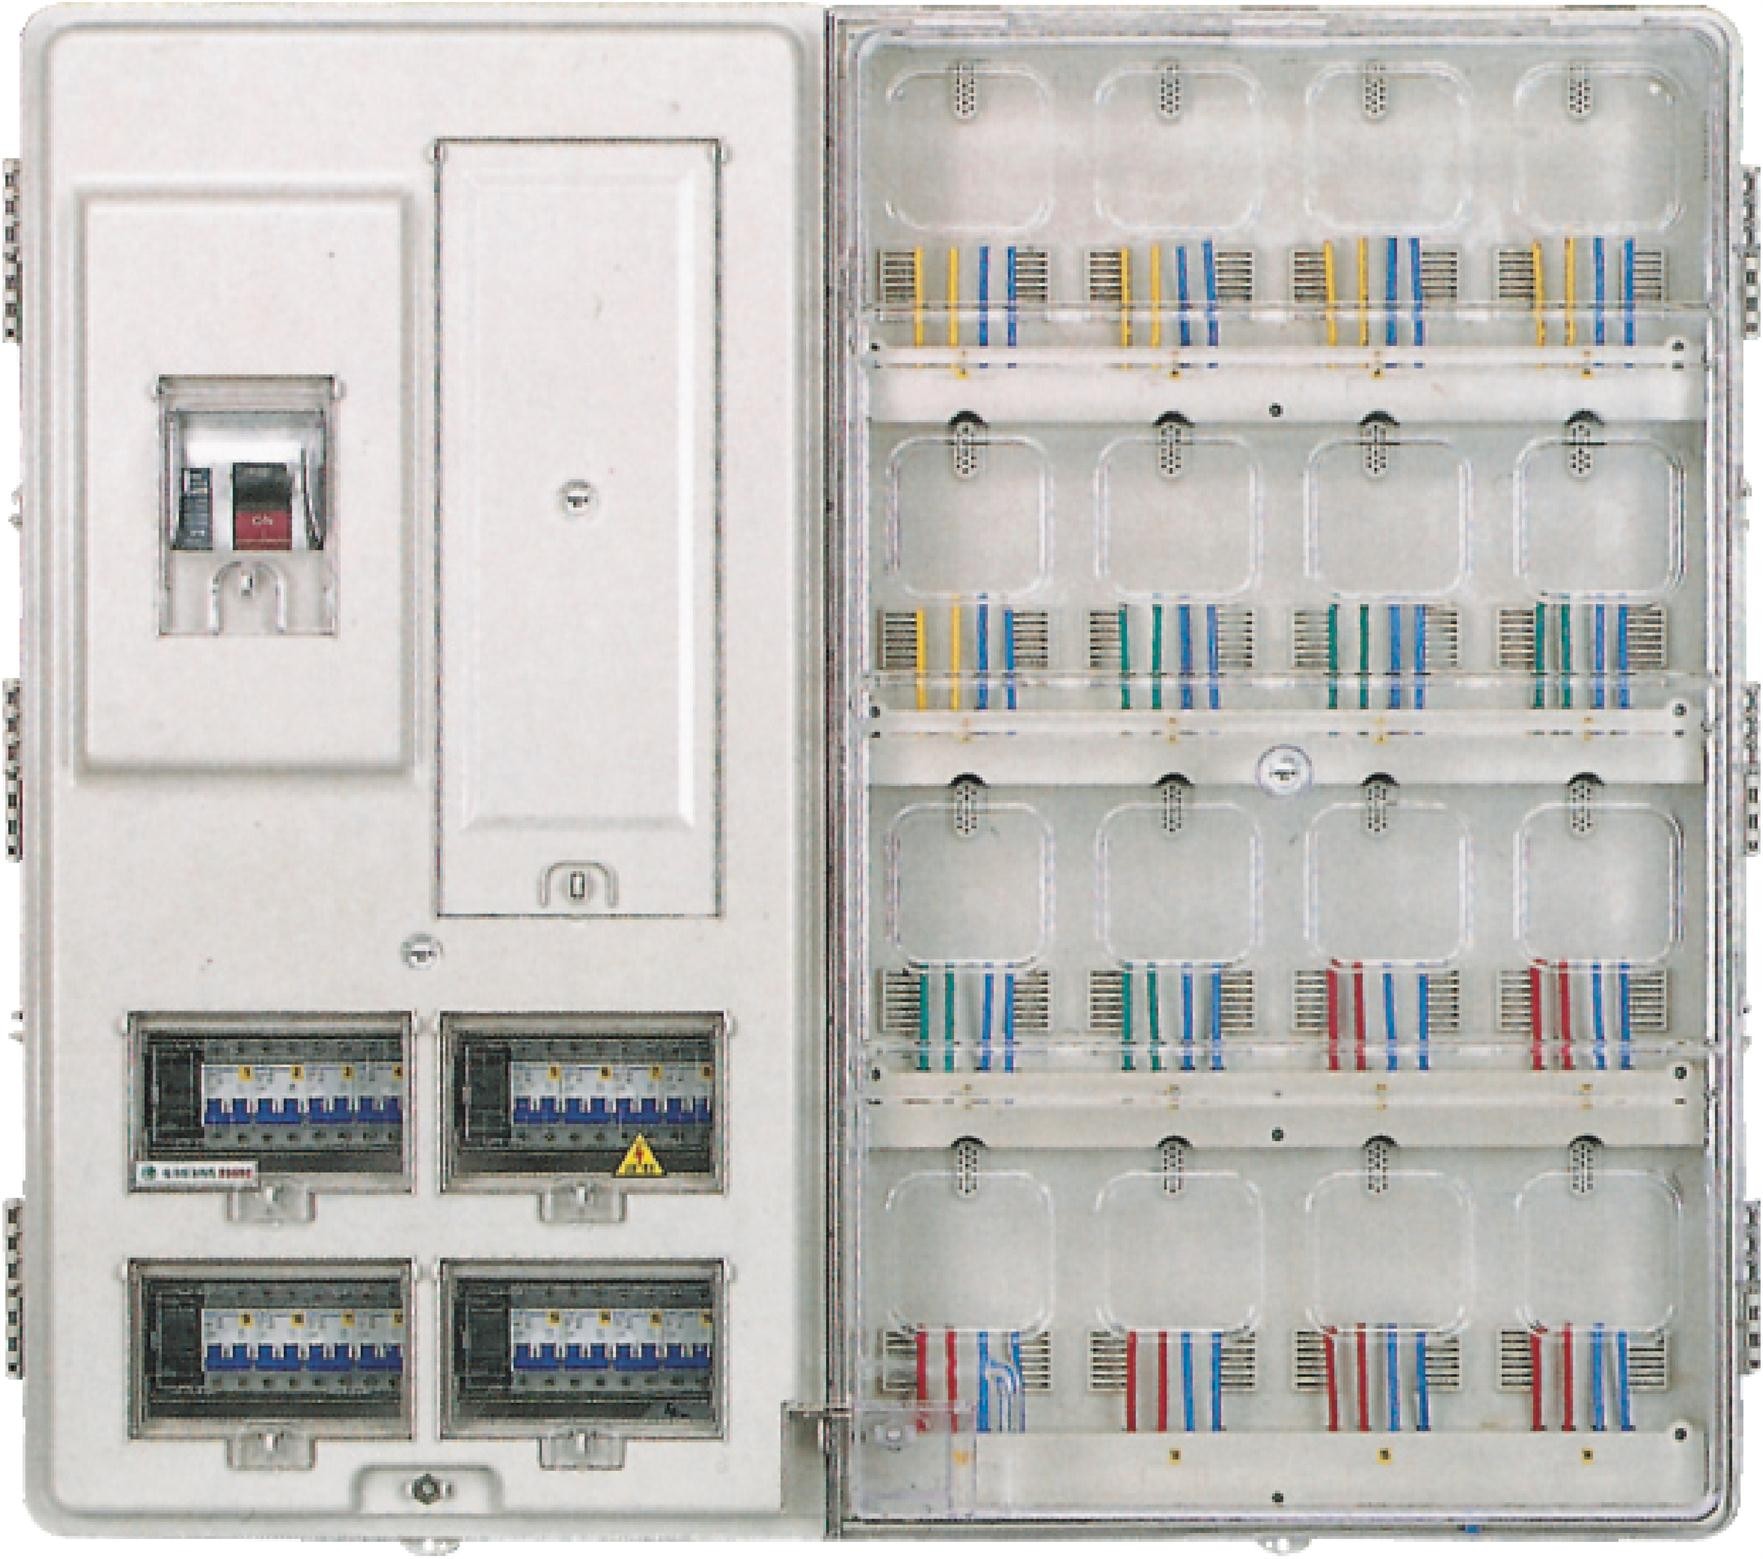 Jednofazowy mieszkaniowy licznik elektryczny 16 stanowisk montażowych na obudowie komputera